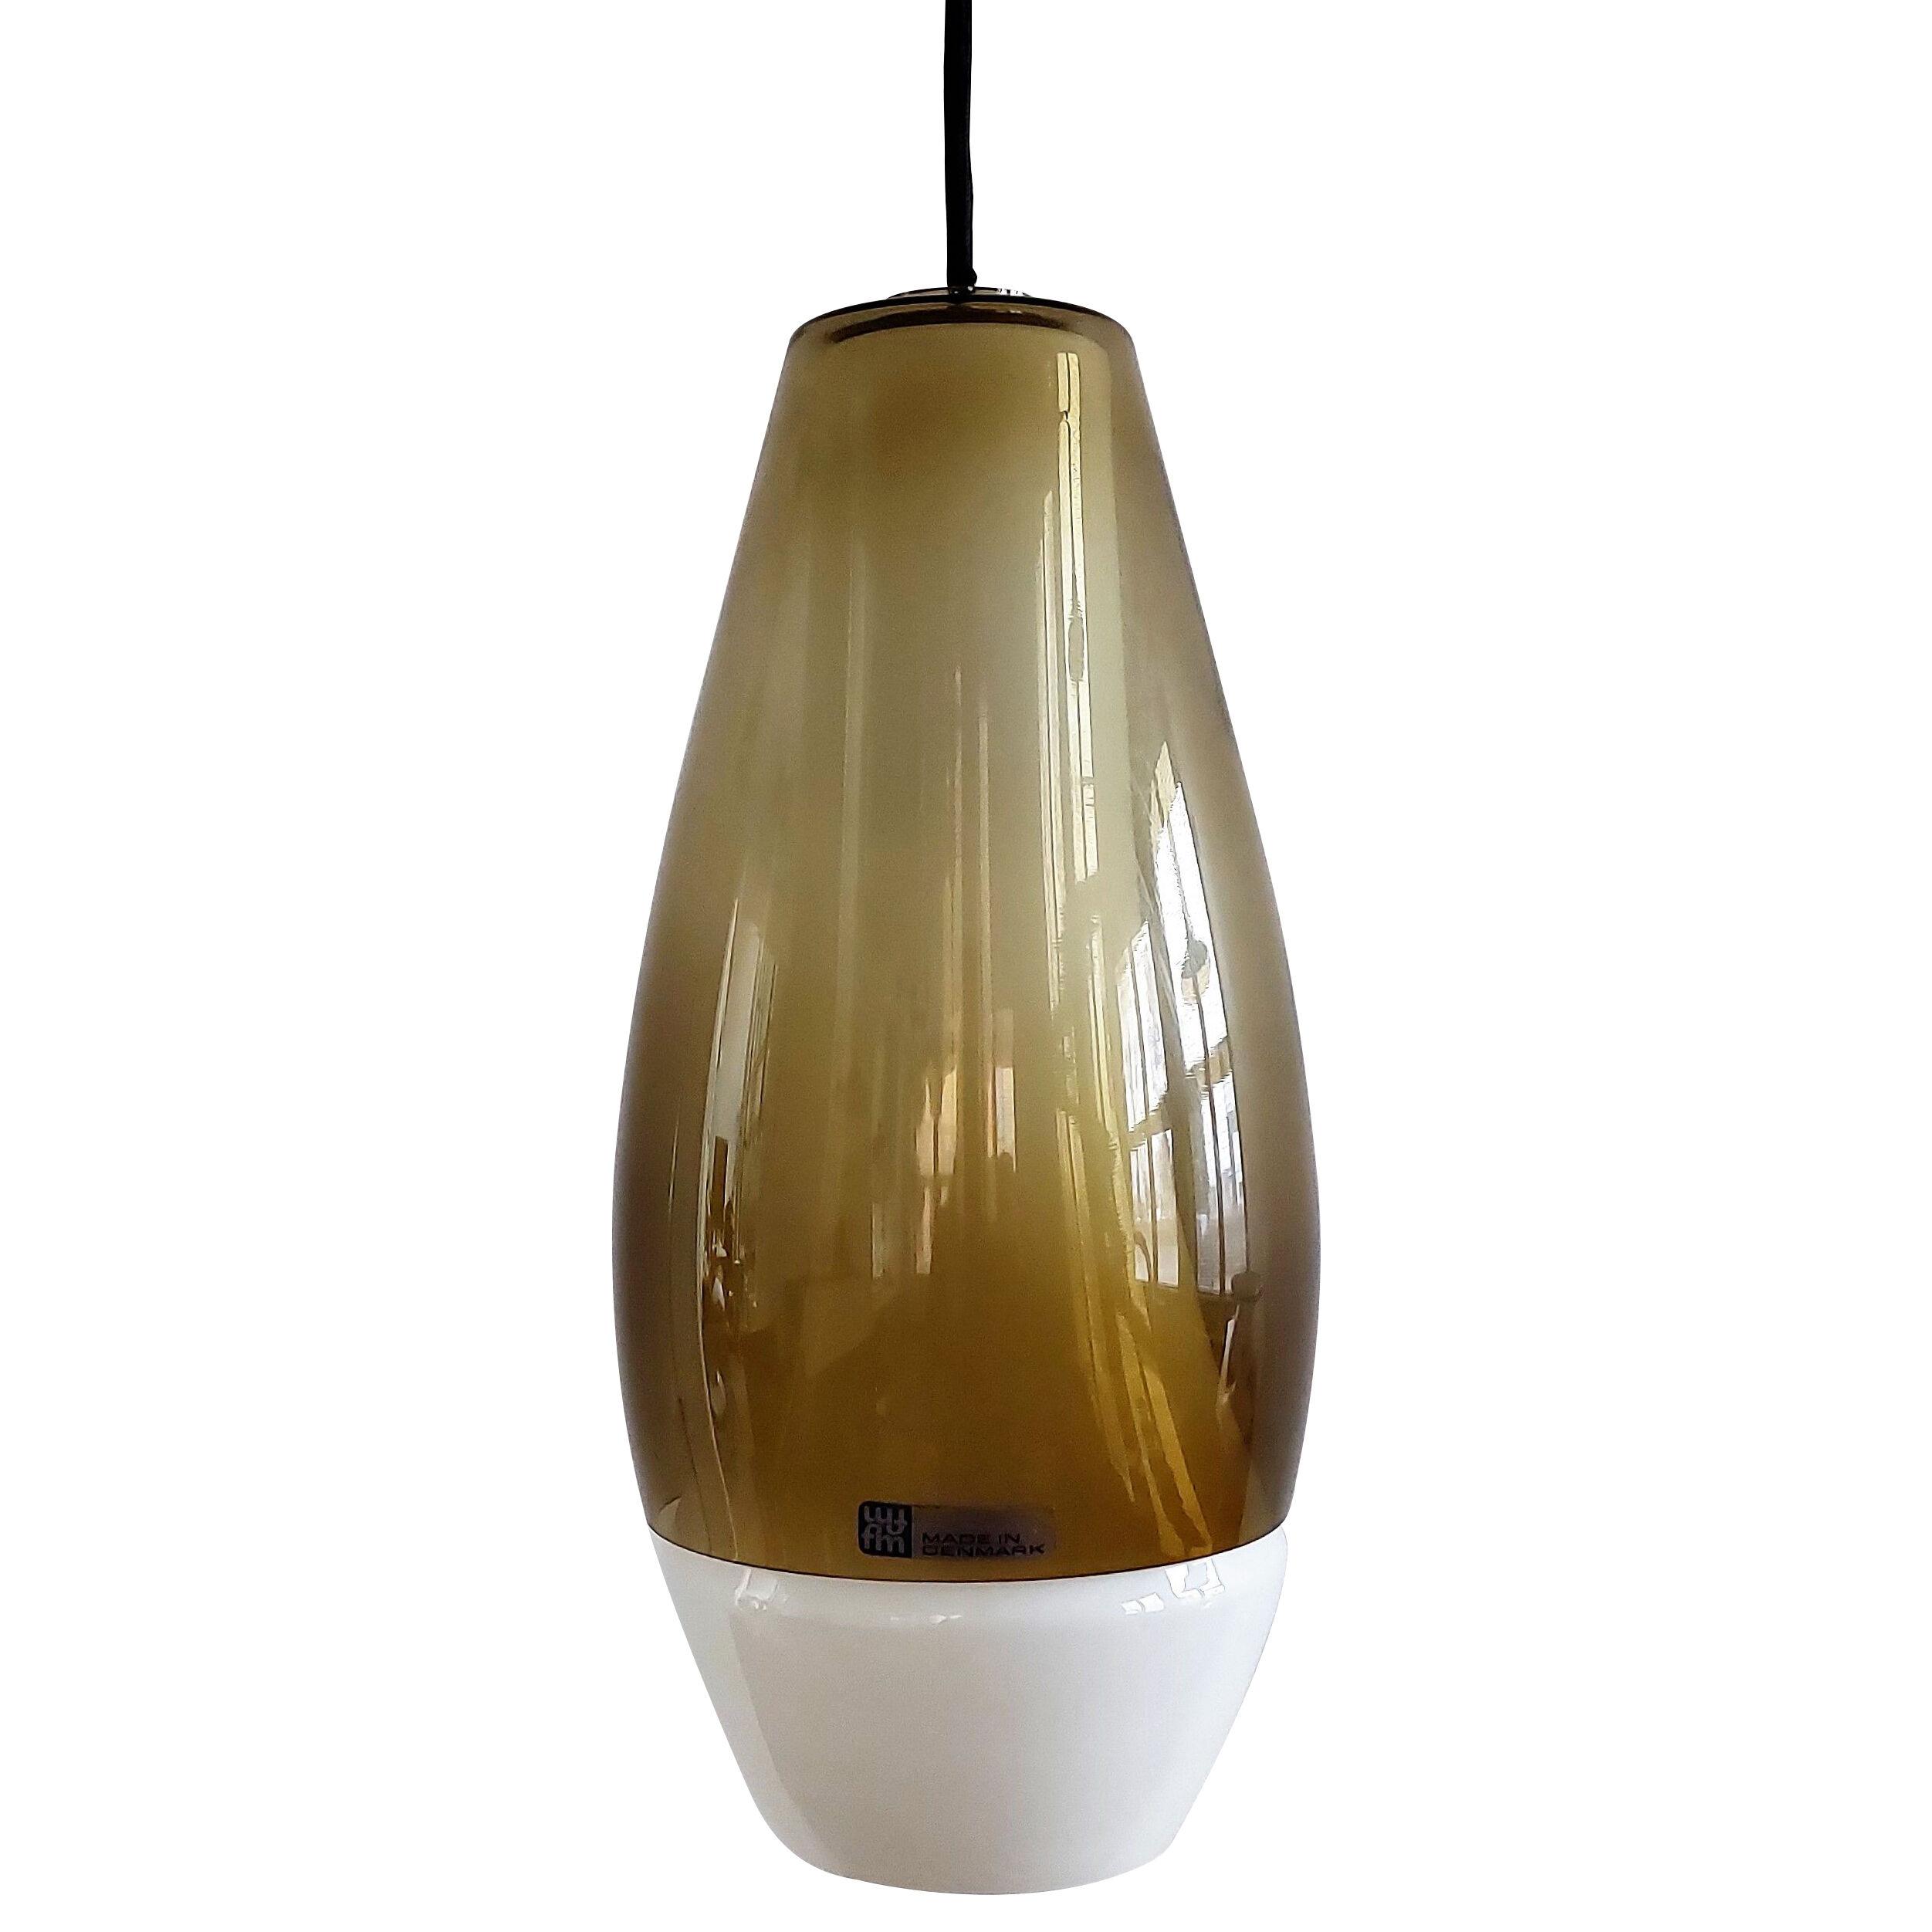 'Rota' pendant lamp by Bent Nordsted for Fog & Mørup, Denmark 1960's